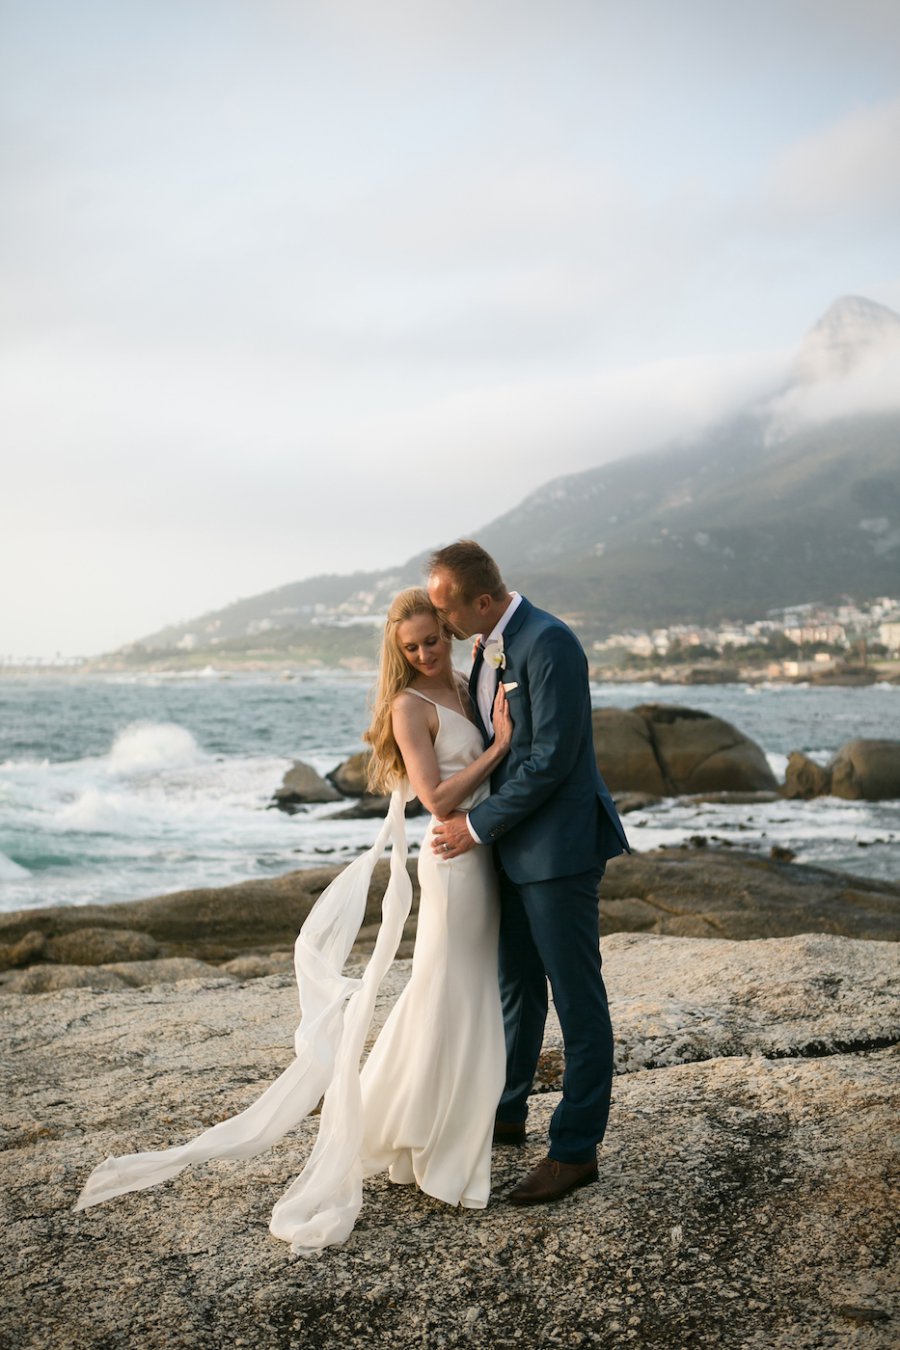 Leonie und Thomas am Meer in Südafrika Hochzeitskleid mit Schleife